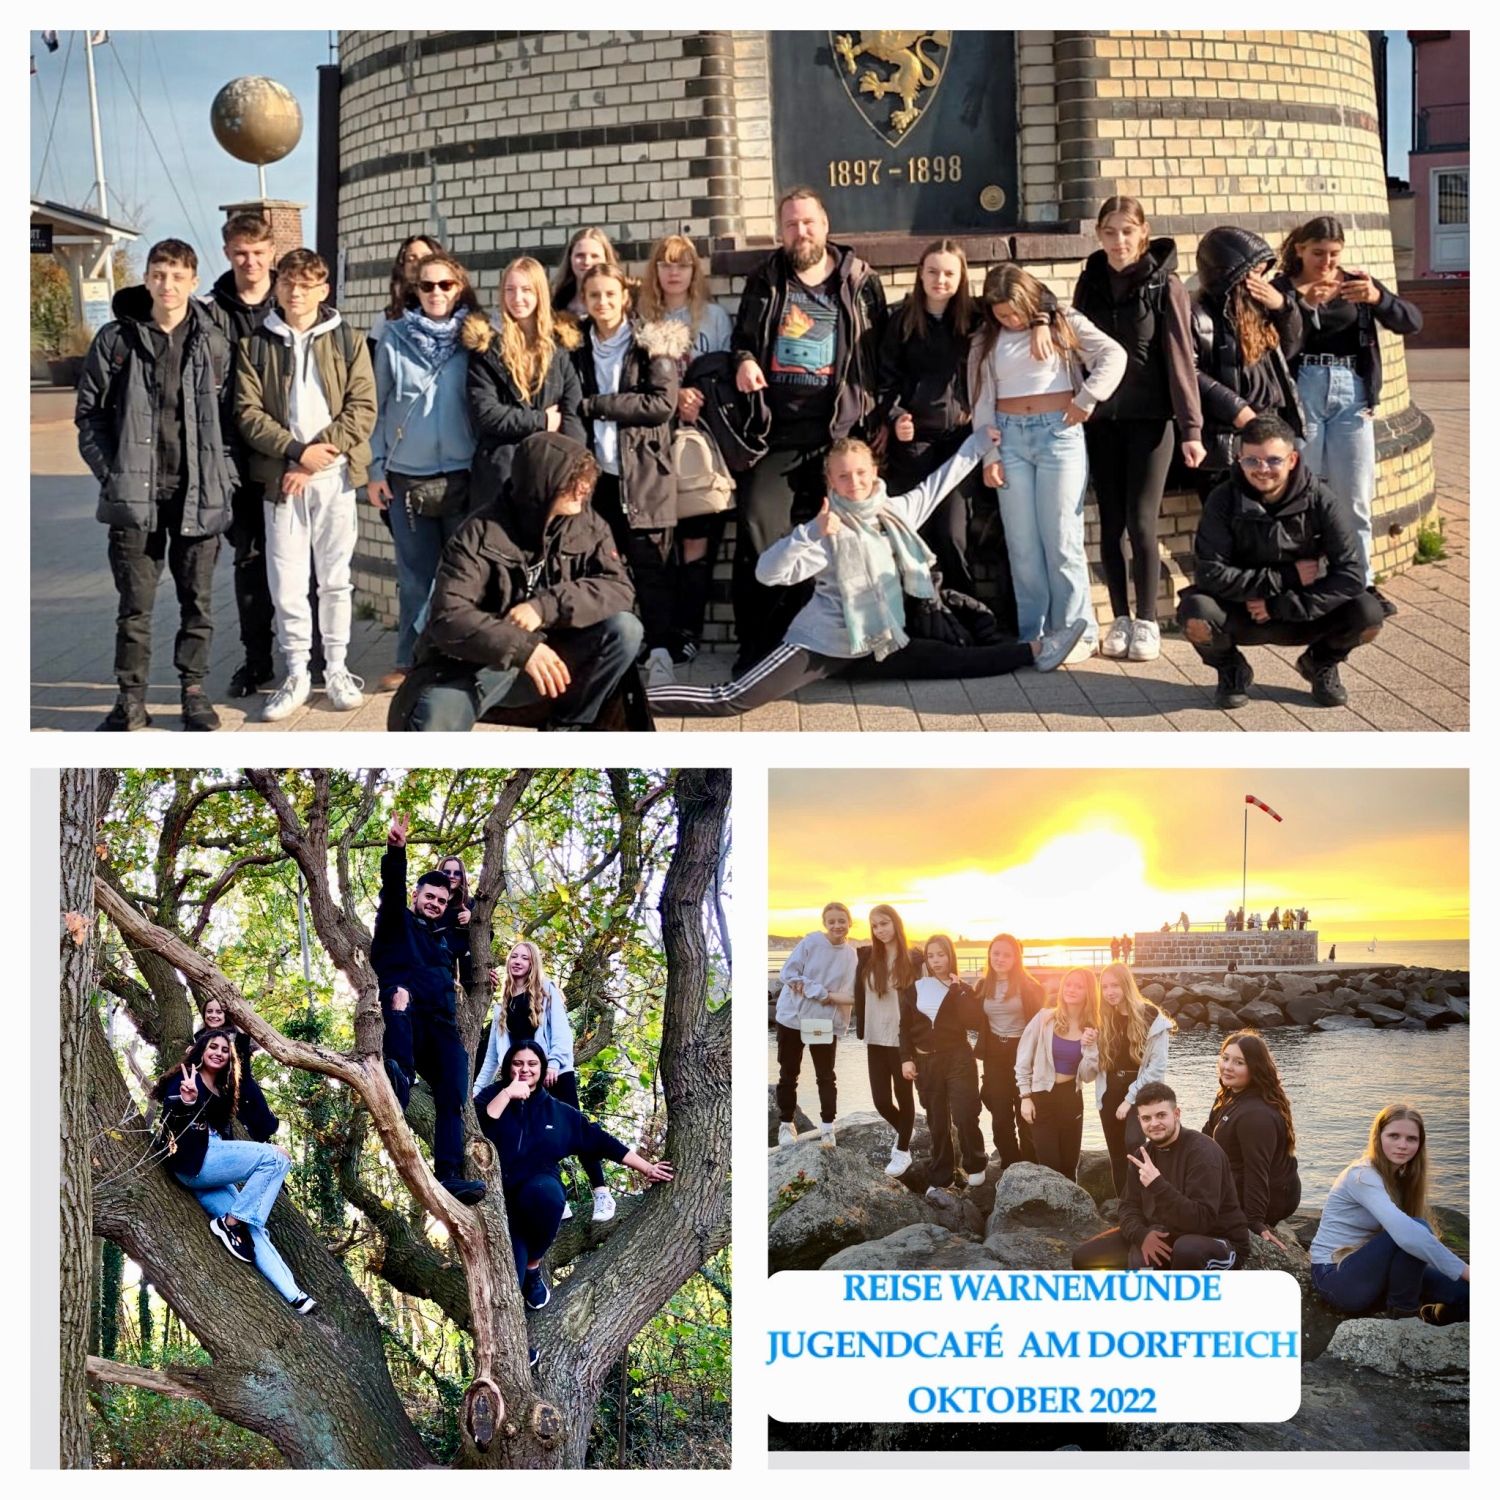 Es ist eine Collage der Reise nach Warnemünde zu sehen. Auf allen drei Bildern sind Jugendliche und Mitarbeiter_innen zu sehen.